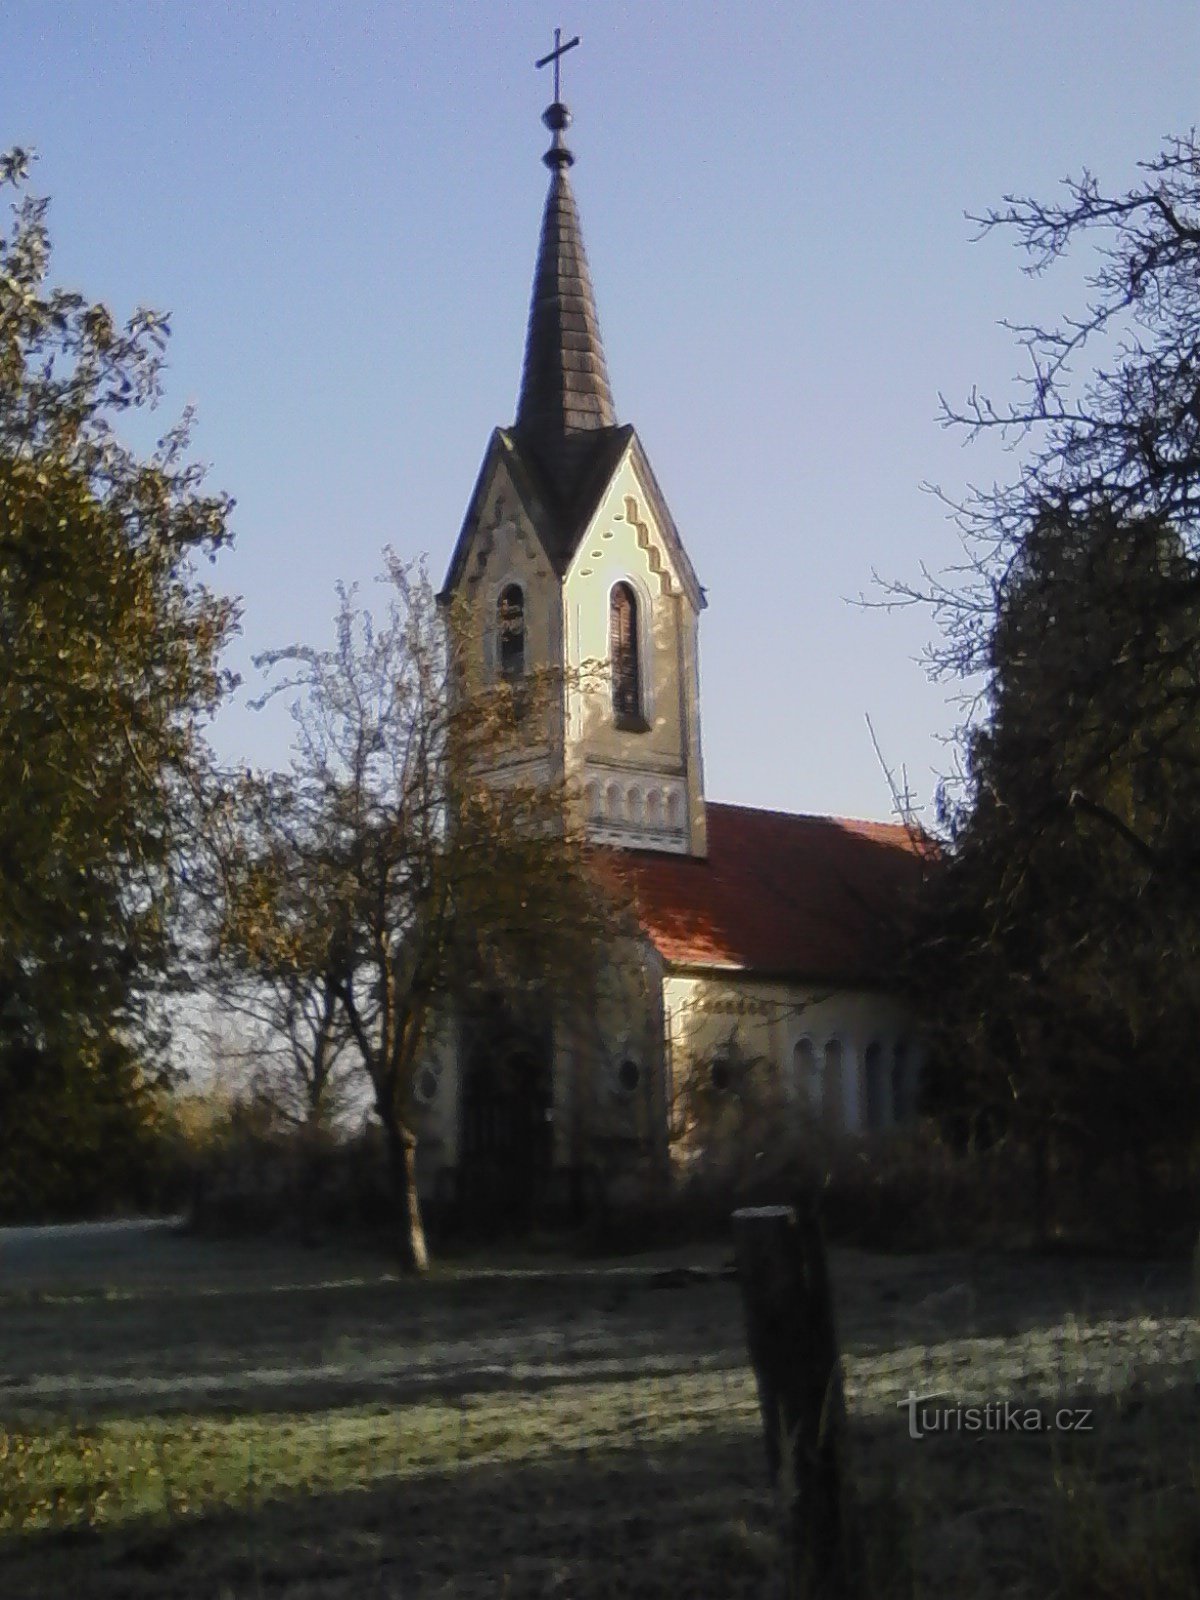 2. Часовня Седмиболестной П. Марии близ Етржиховиц с 1859 г.